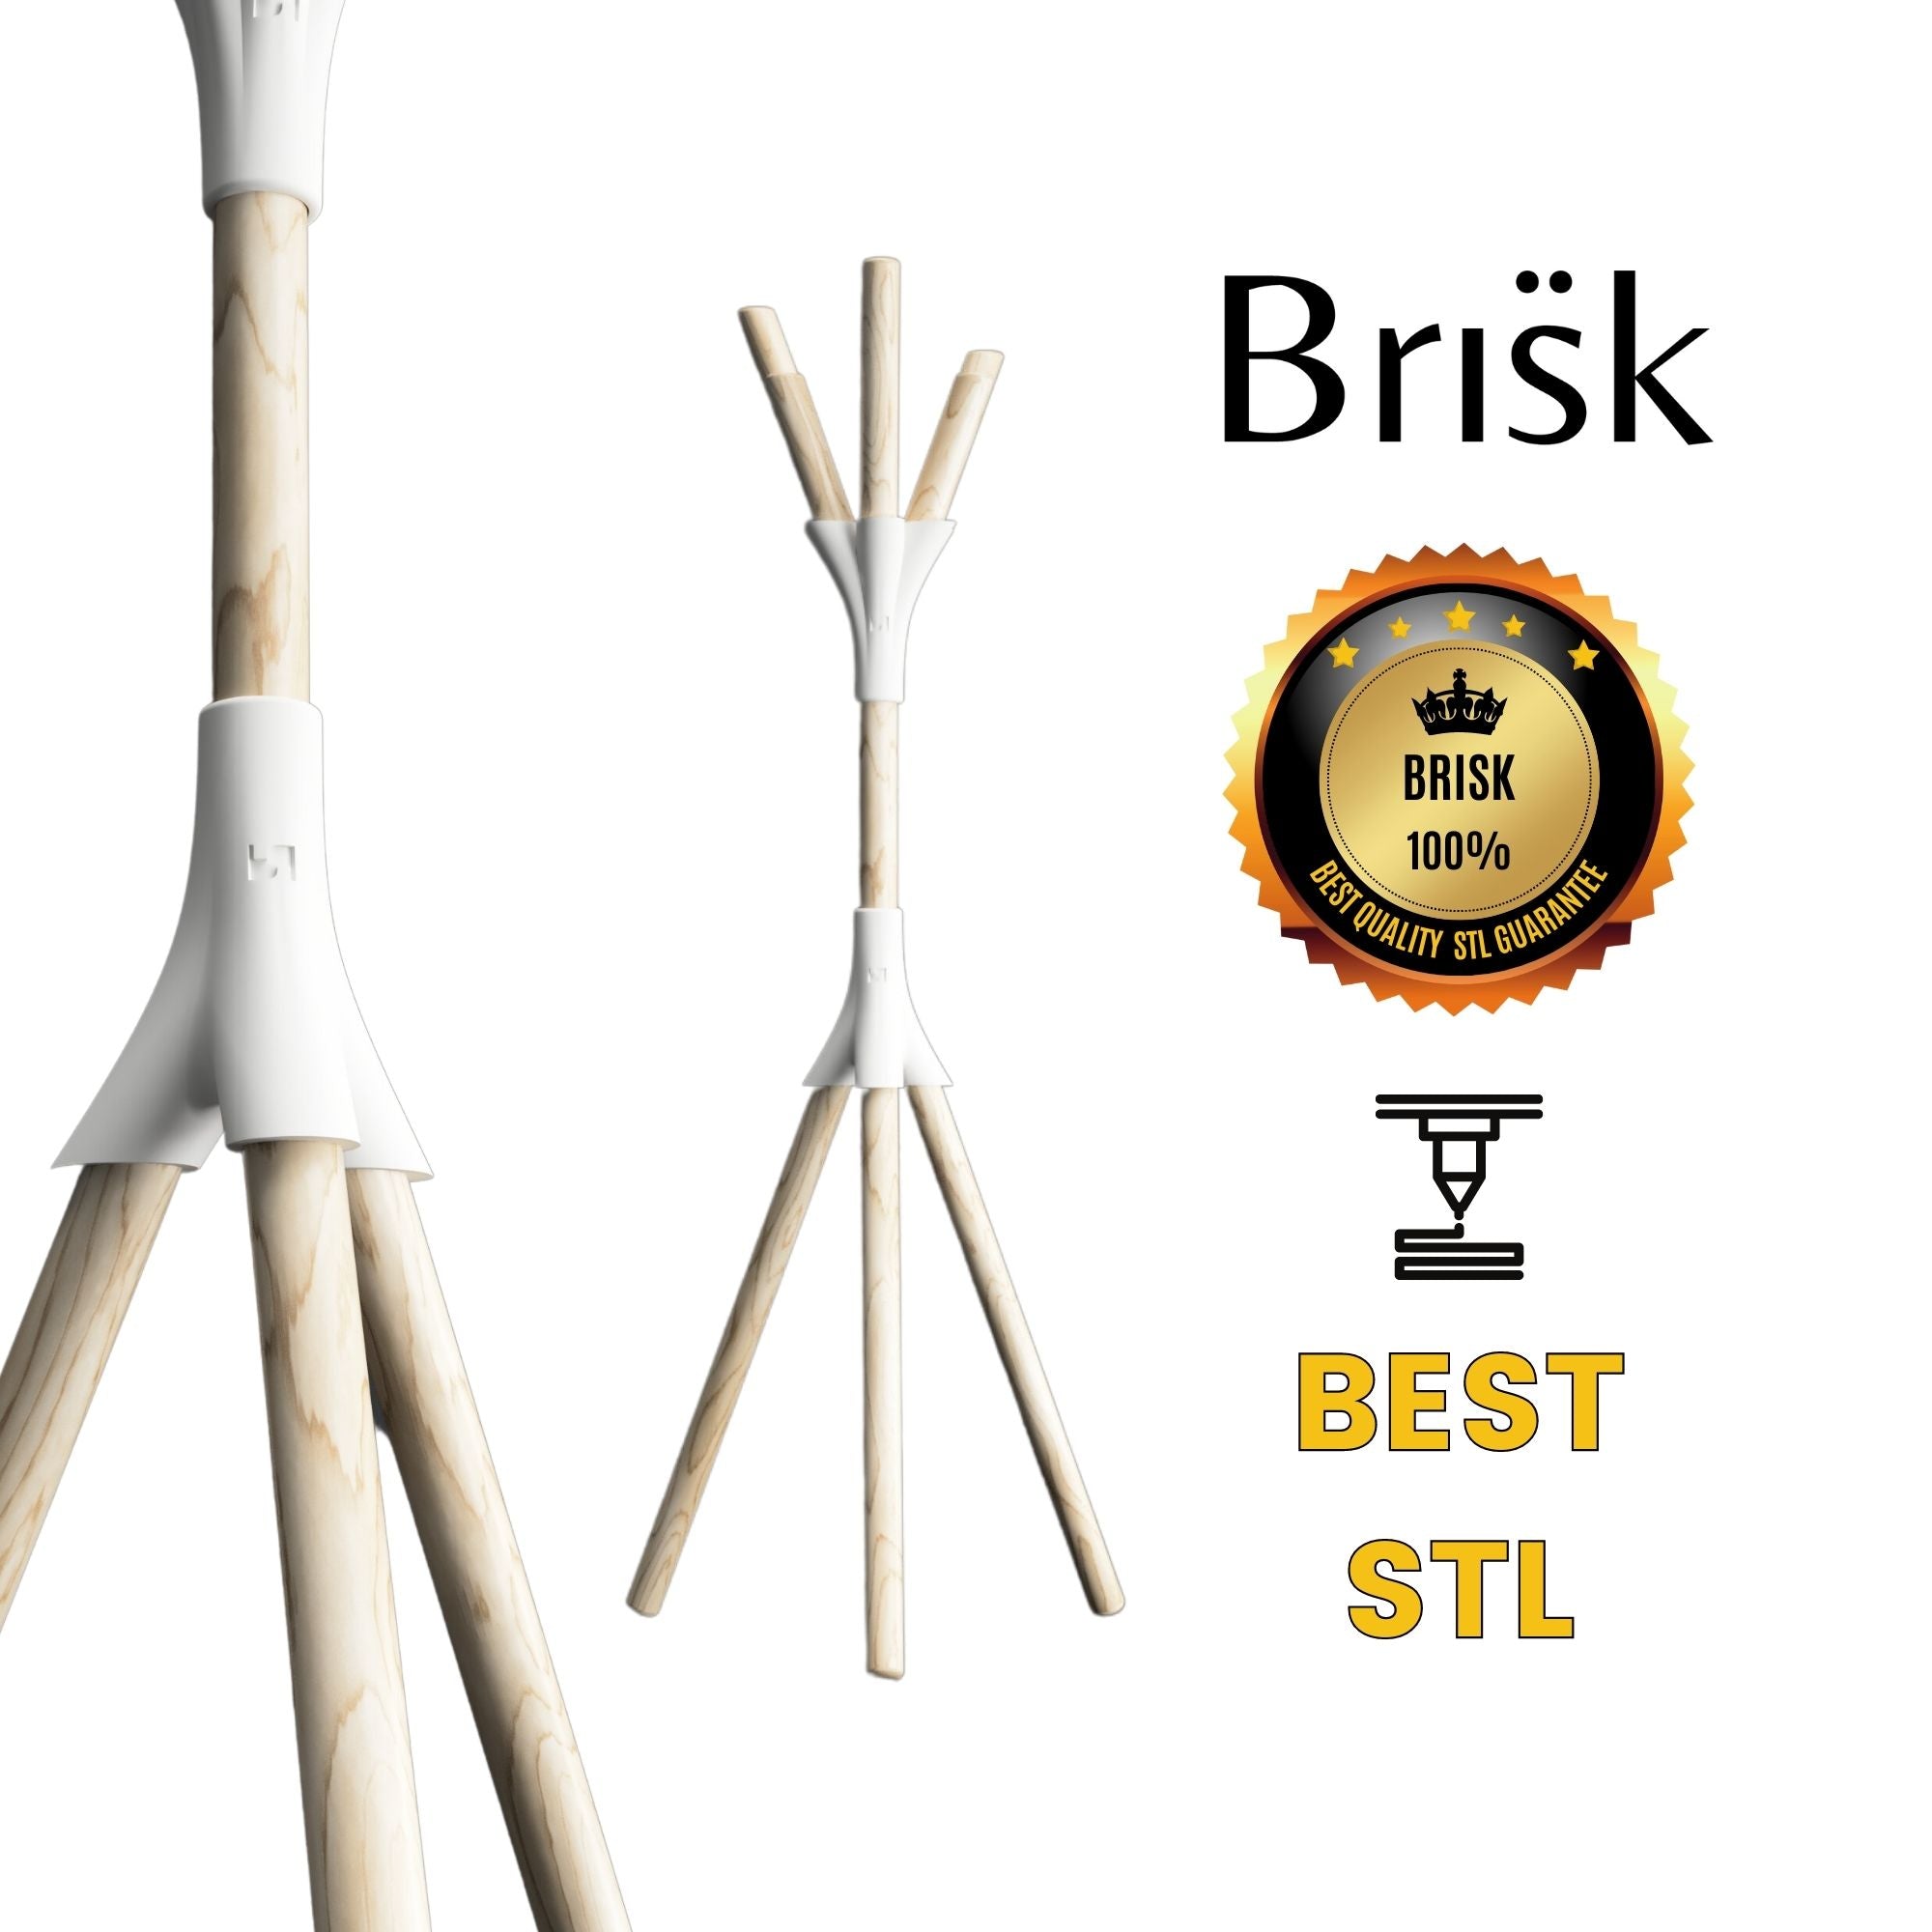 Brisk 3D Design Coat Hanger / STL Coat Hanger / Digital File / STL File / Ready for 3D Printing / Files for 3D Printers 